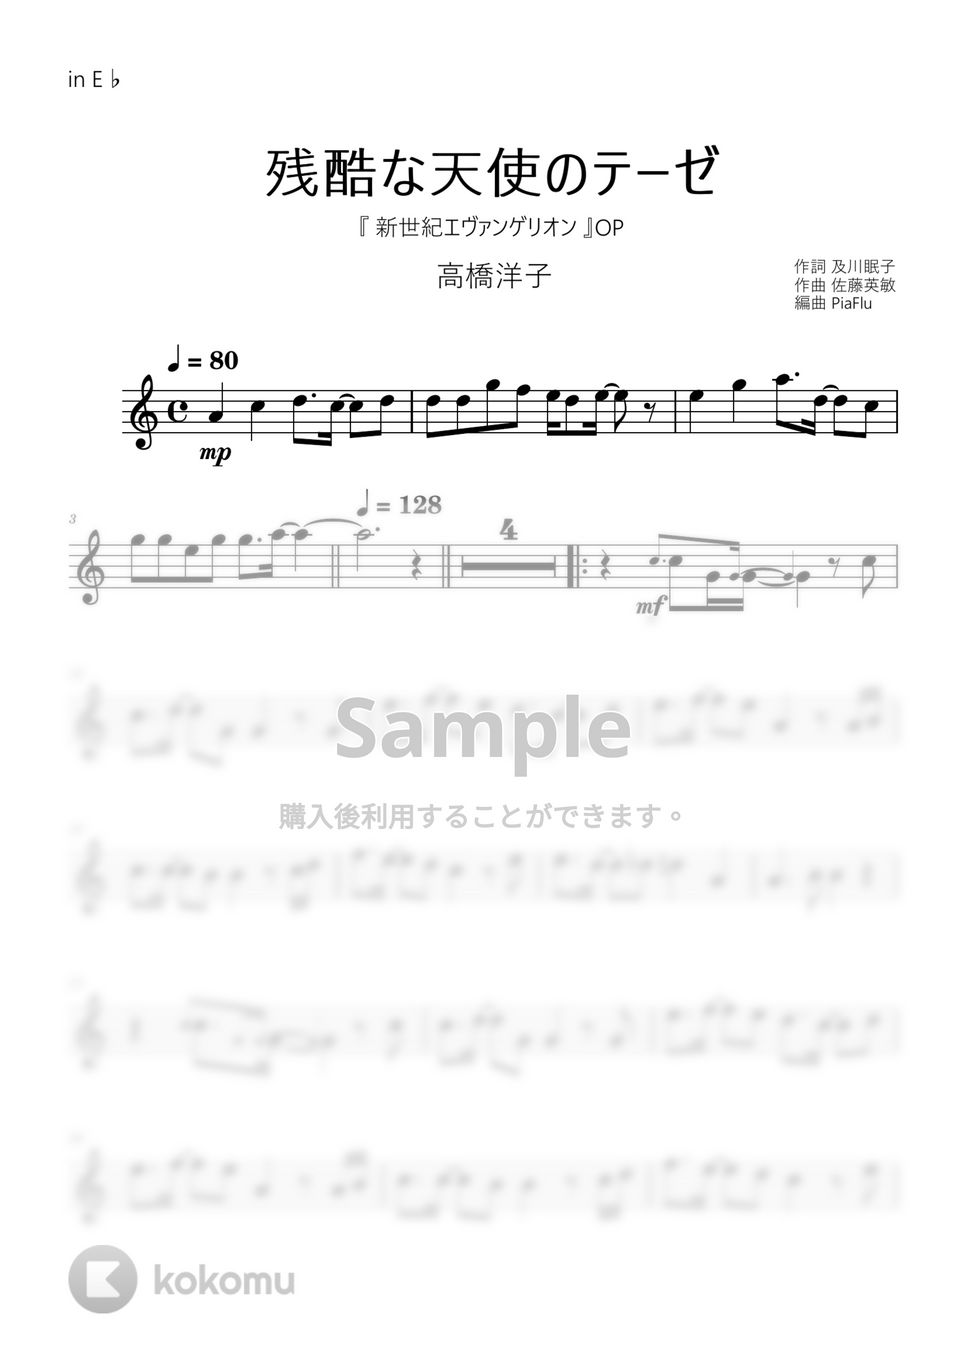 新世紀エヴァンゲリオン - 残酷な天使のテーゼ / 高橋洋子 (in E♭) by PiaFlu